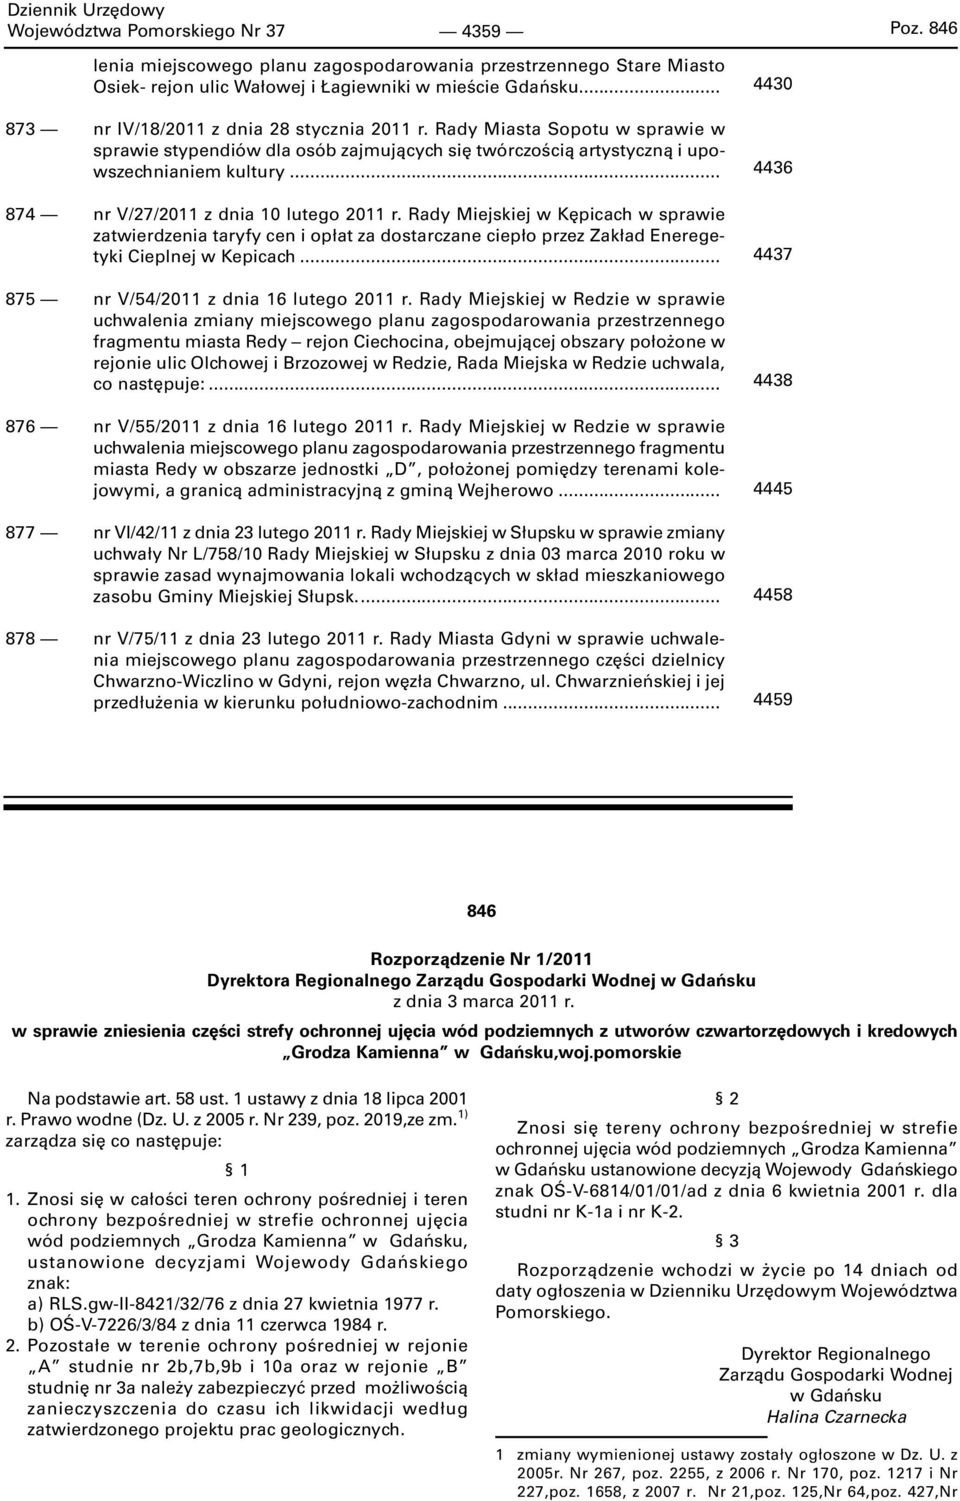 .. 874 nr V/27/2011 z dnia 10 lutego 2011 r. Rady Miejskiej w Kępicach w sprawie zatwierdzenia taryfy cen i opłat za dostarczane ciepło przez Zakład Eneregetyki Cieplnej w Kepicach.